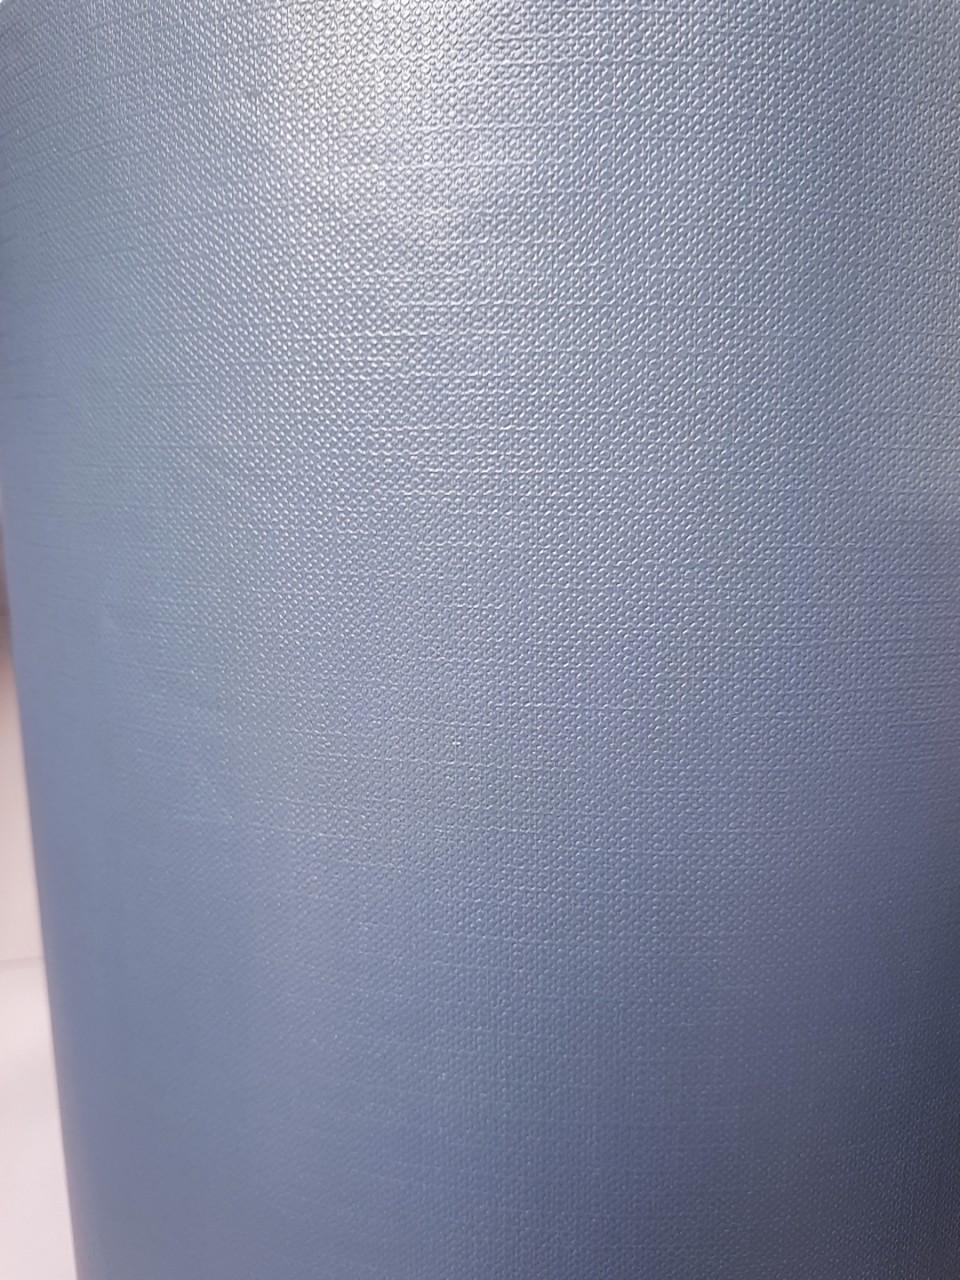 Cuộn 10m decal giấy dán tường màu xanh xám bề mặt nhám khổ 45cm keo sẵn bóc dán